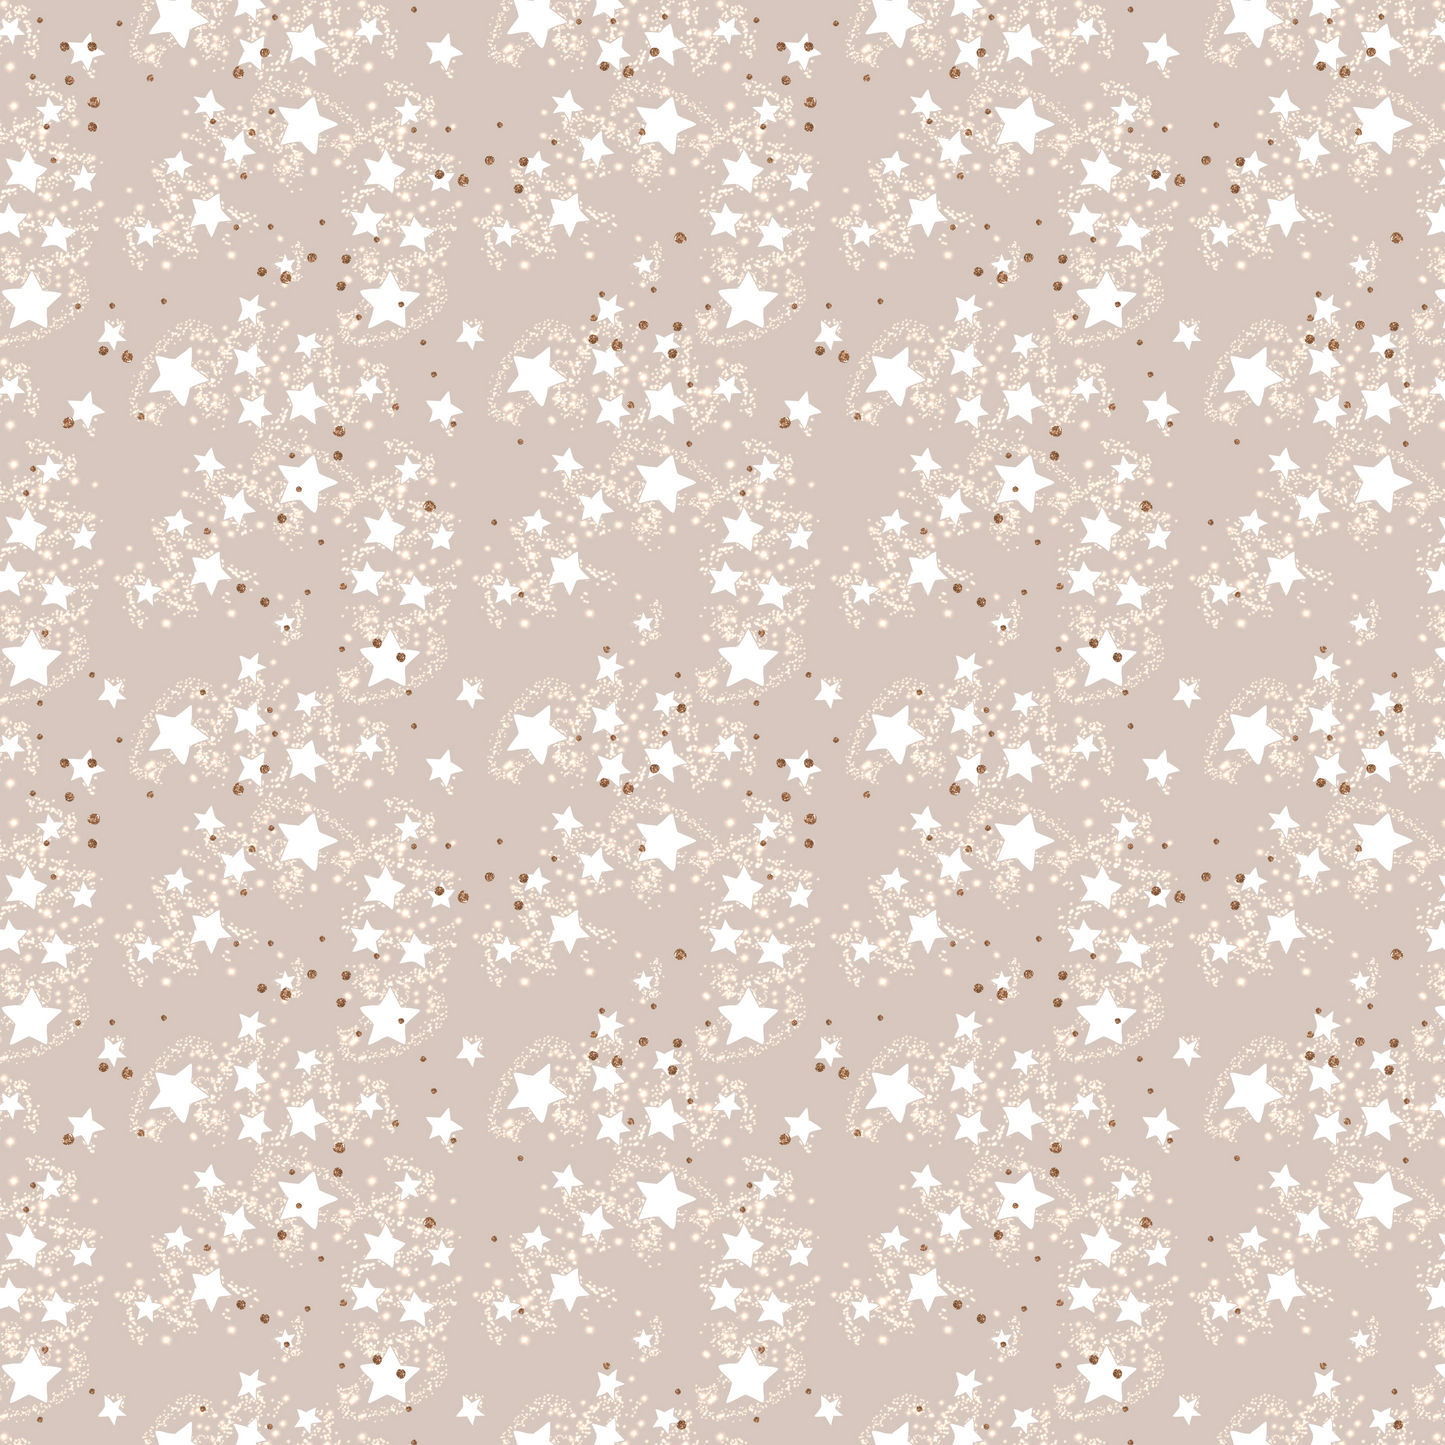 White Christmas - Star Dust 009